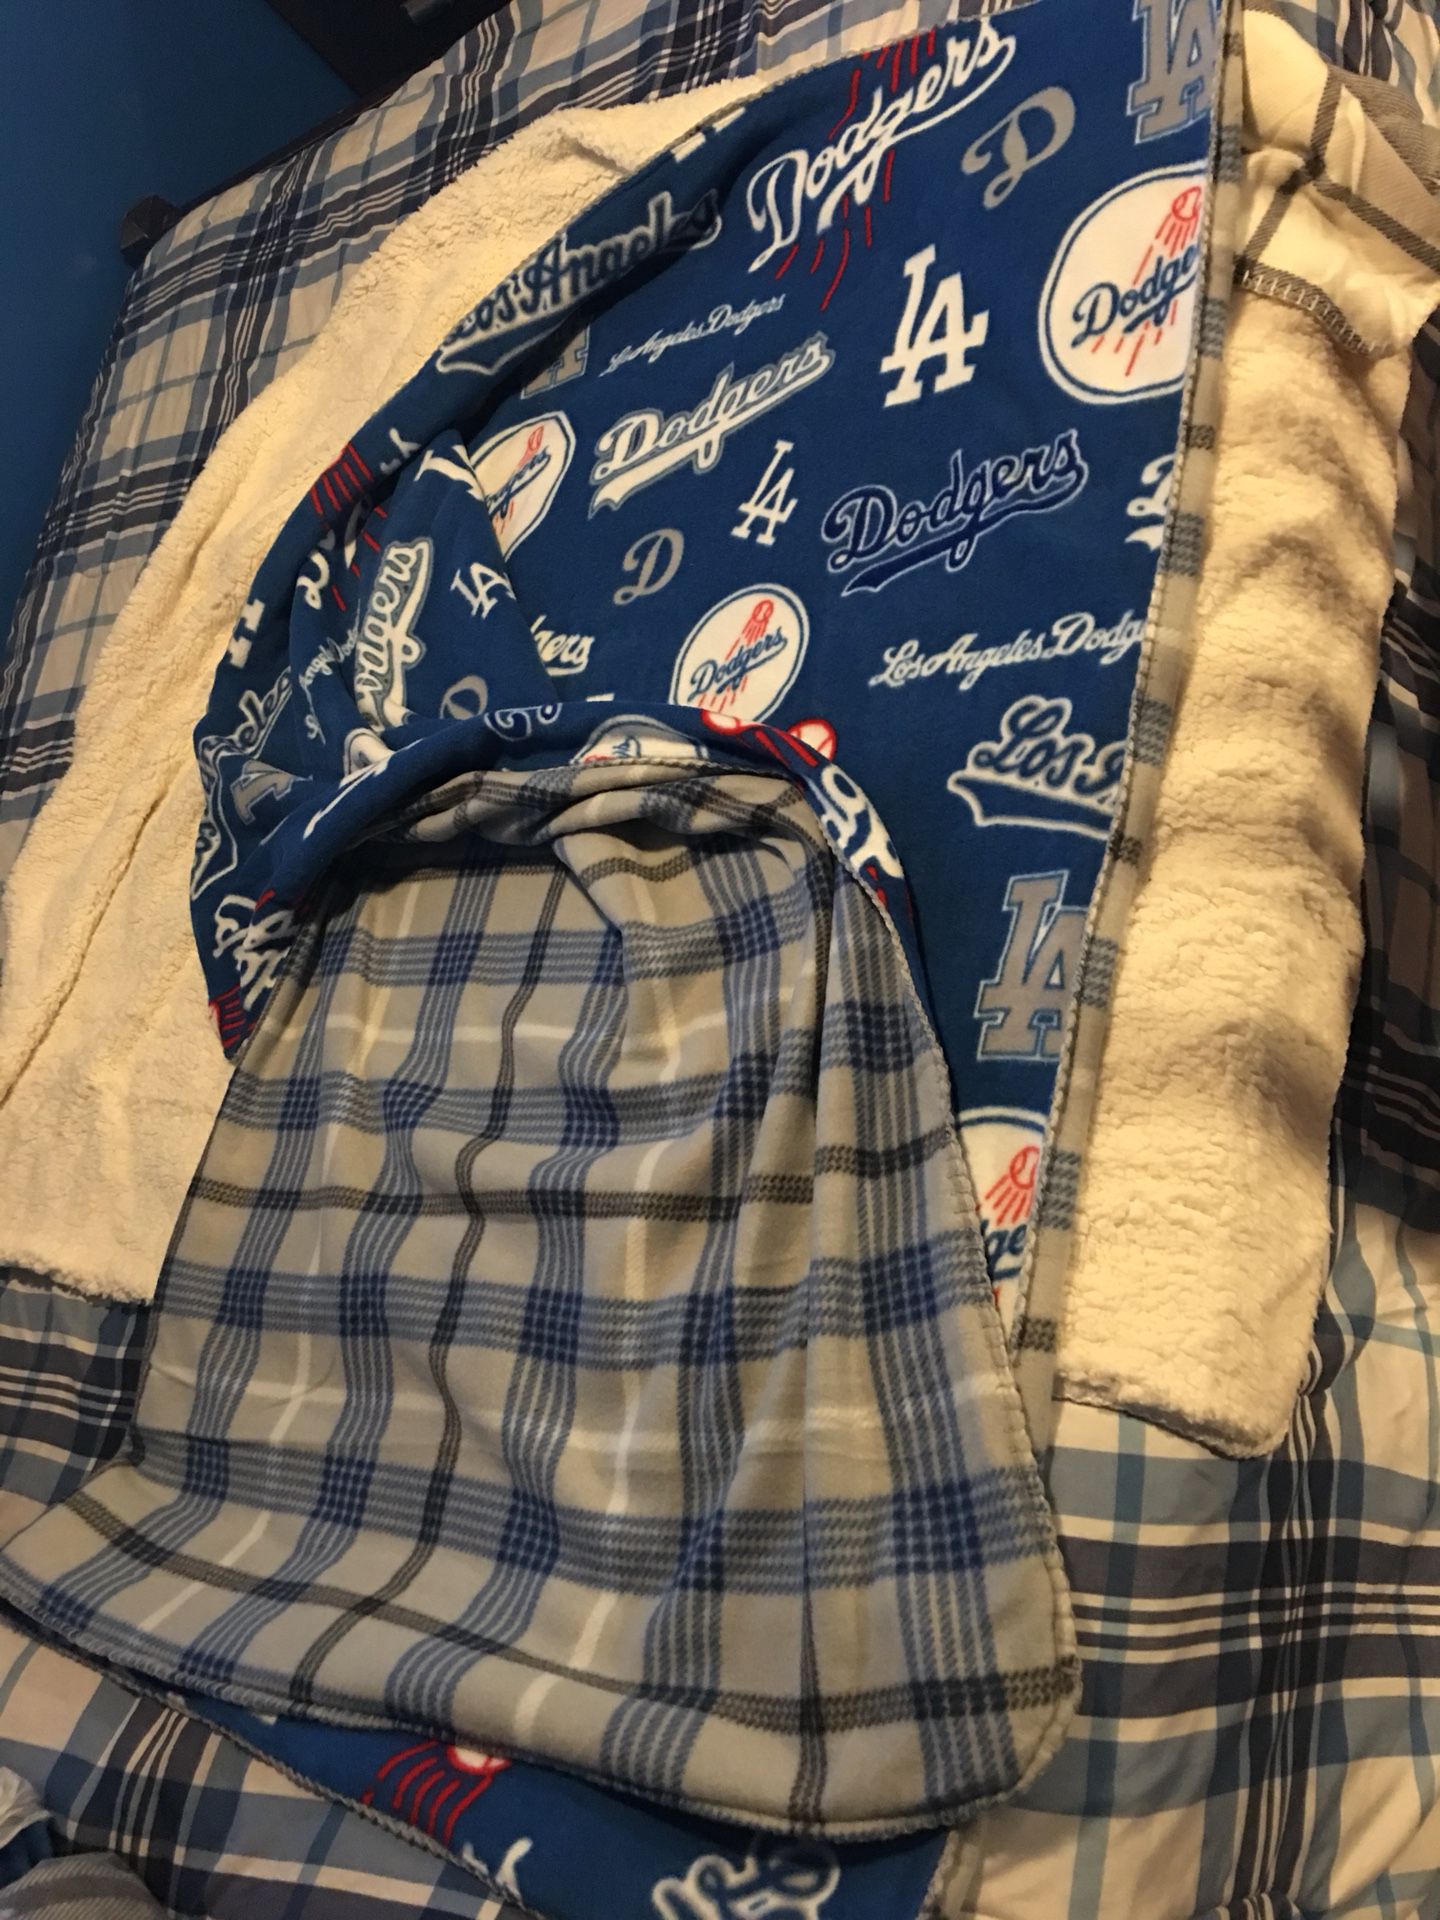 Dodgers blanket